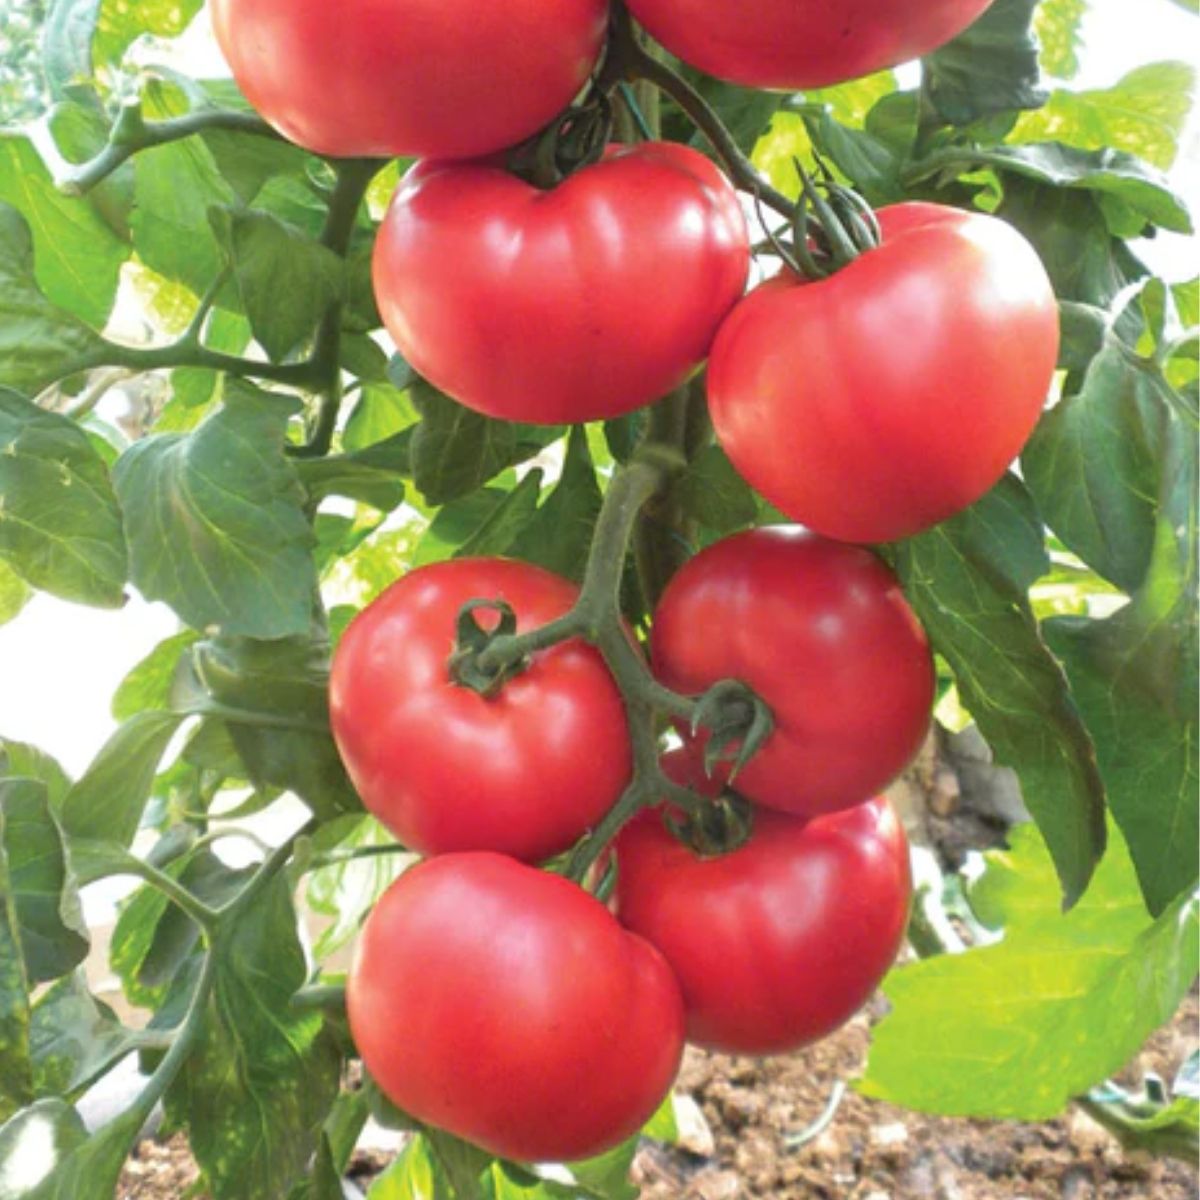 Tomate - Seminte de tomate NEMESIS F1, 1000 seminte, YUKSEL, hectarul.ro